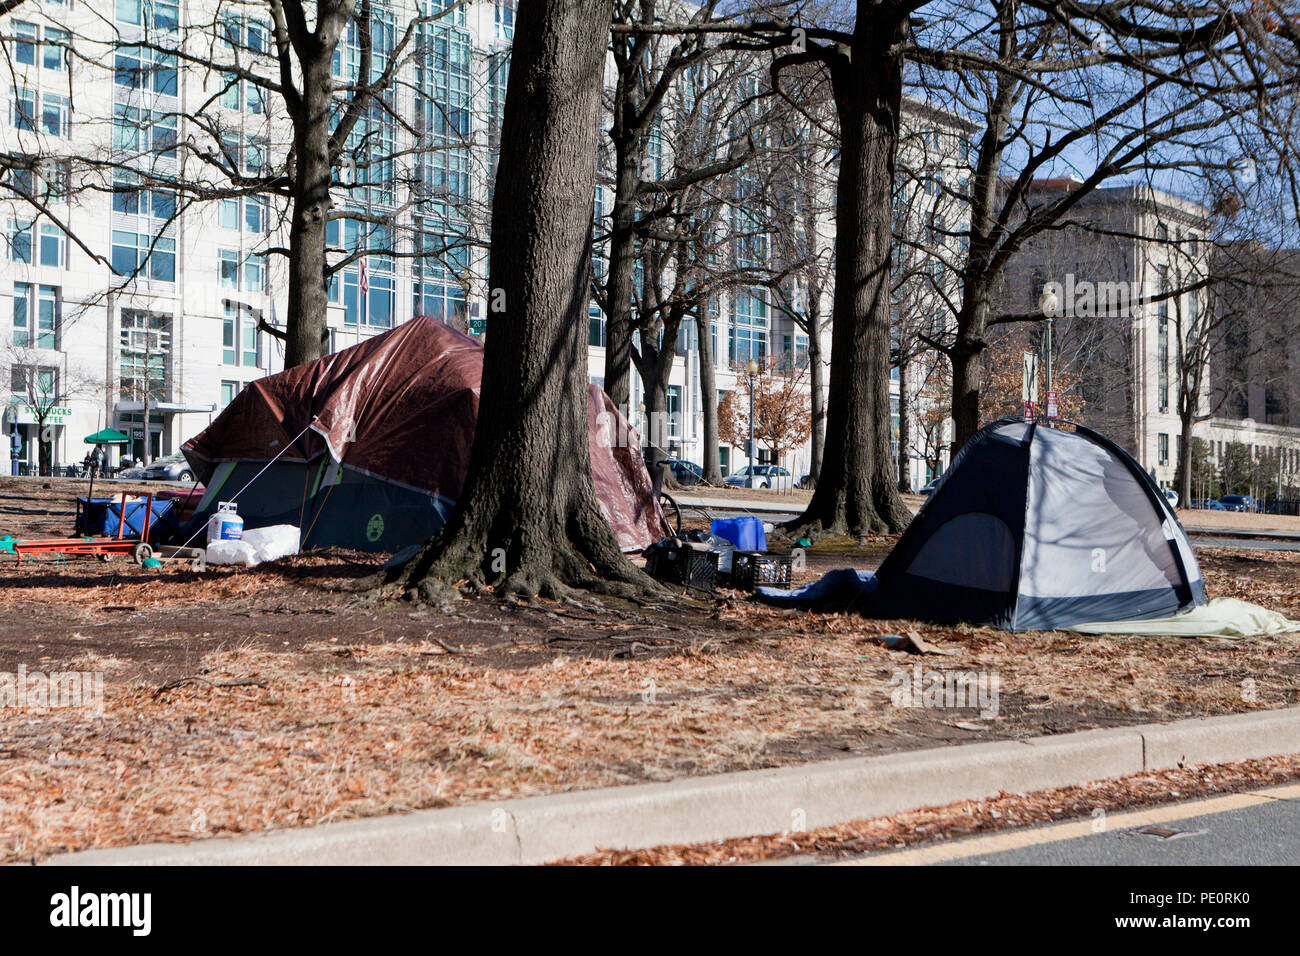 Obdachlosen Zelte (bürgersteig Zelt) im städtischen Umfeld - Washington, DC, USA Stockfoto